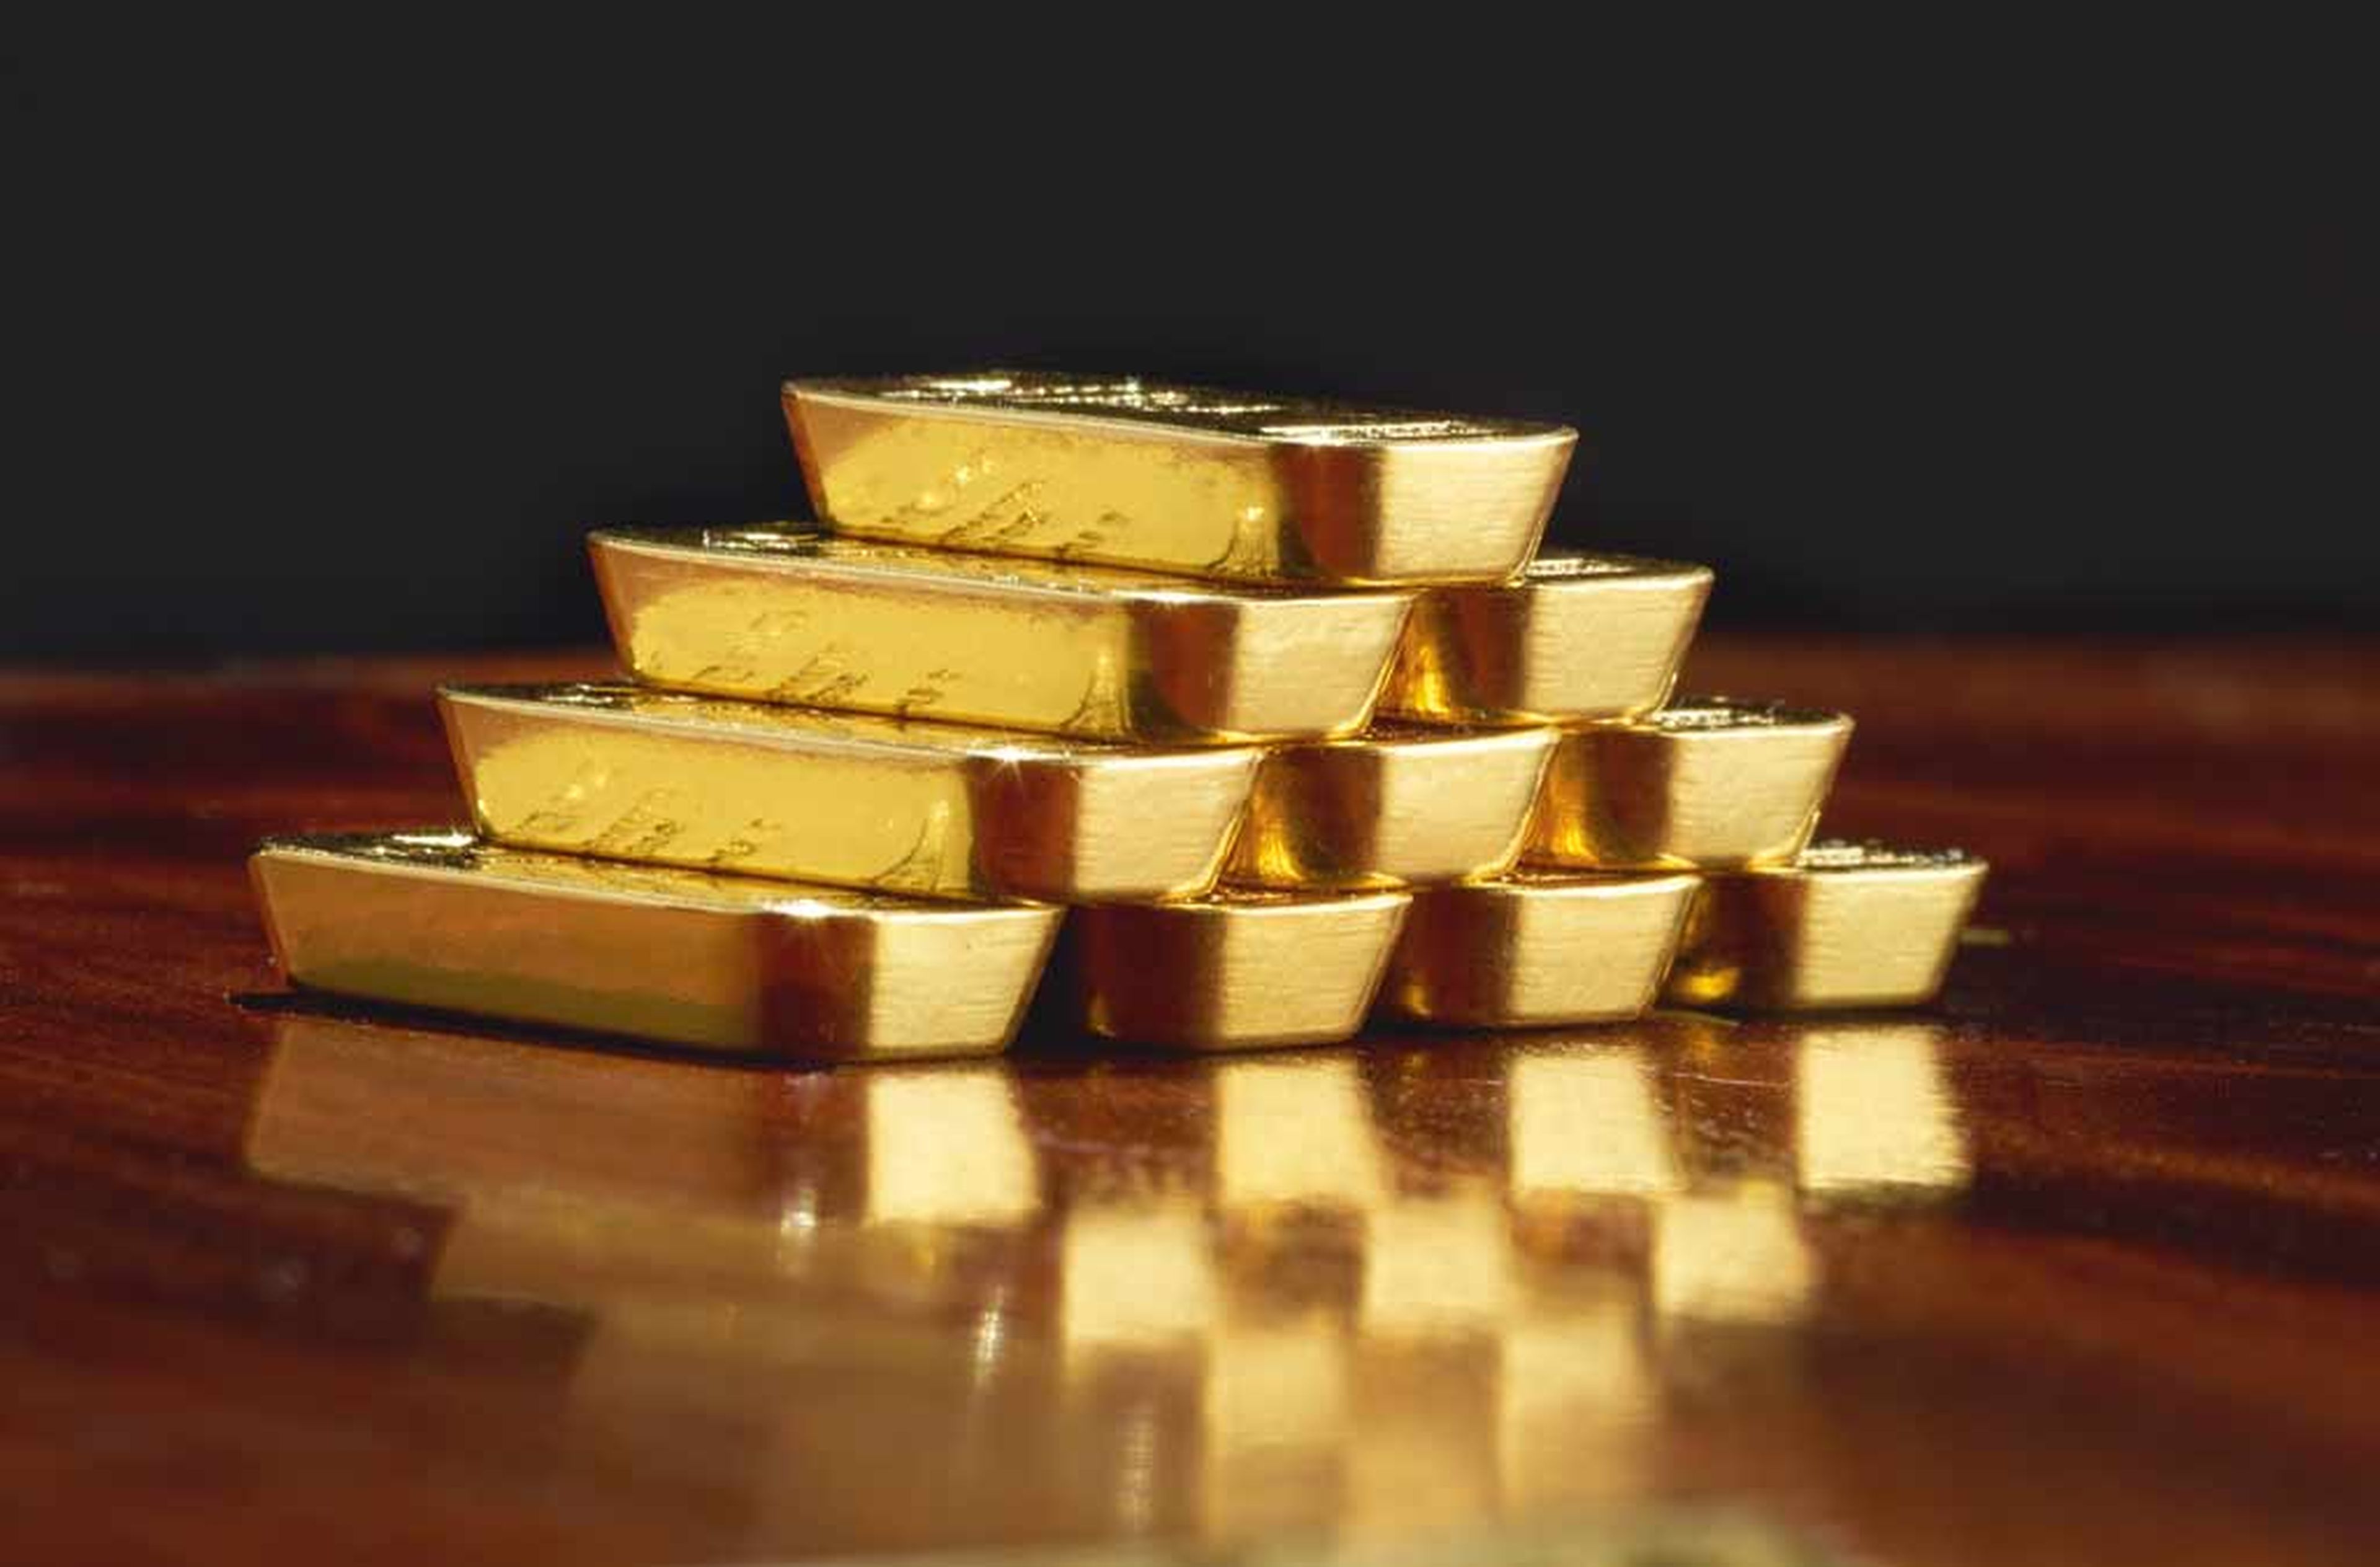 Cómo invertir en oro: lingotes o productos financieros